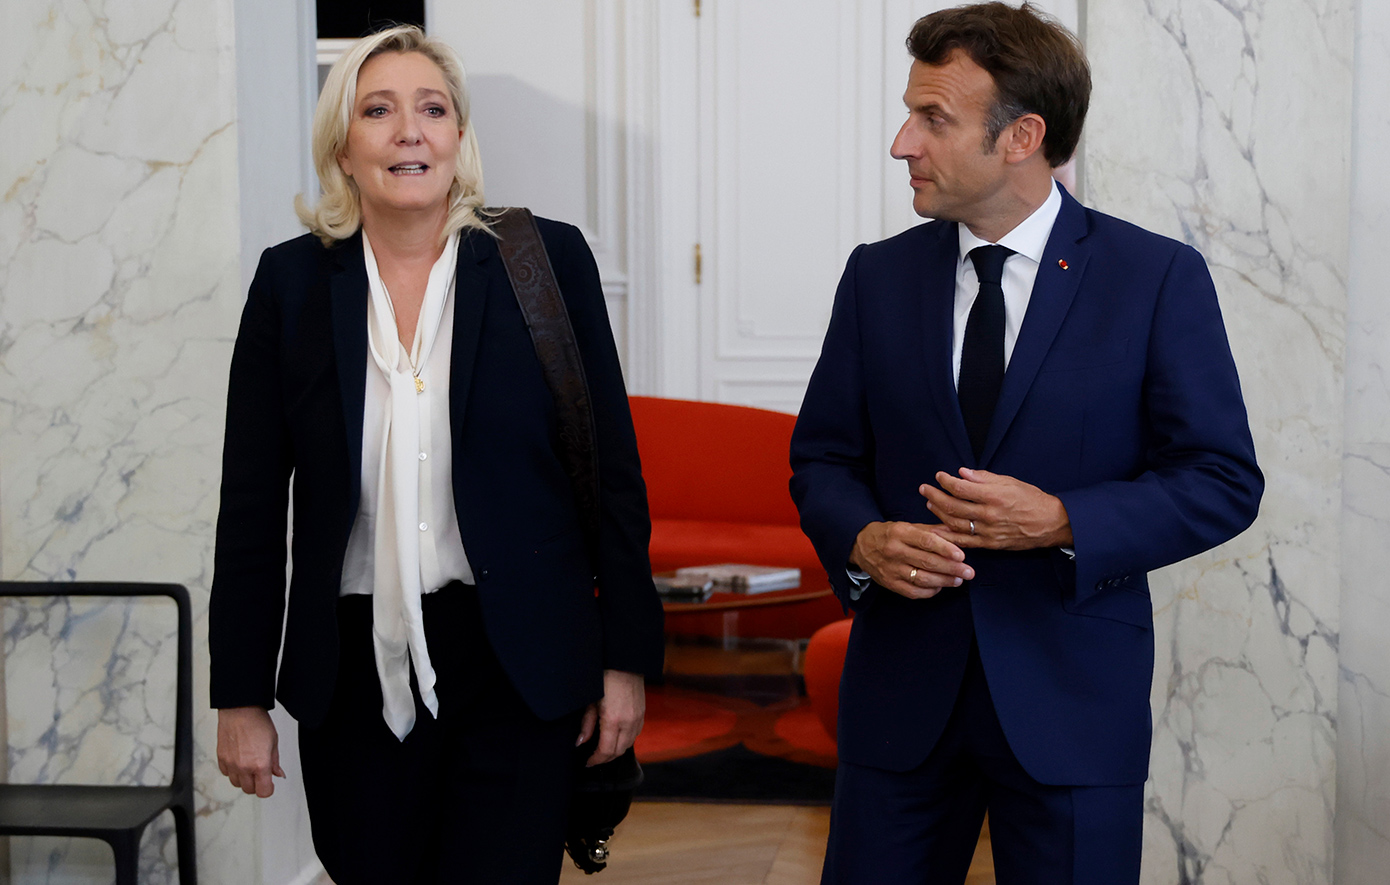 Το «στοίχημα» του Μακρόν που τώρα απειλεί να ανατρέψει την πολιτική τάξη πραγμάτων στη Γαλλία – Η ακροδεξιά κοντά στην εξουσία